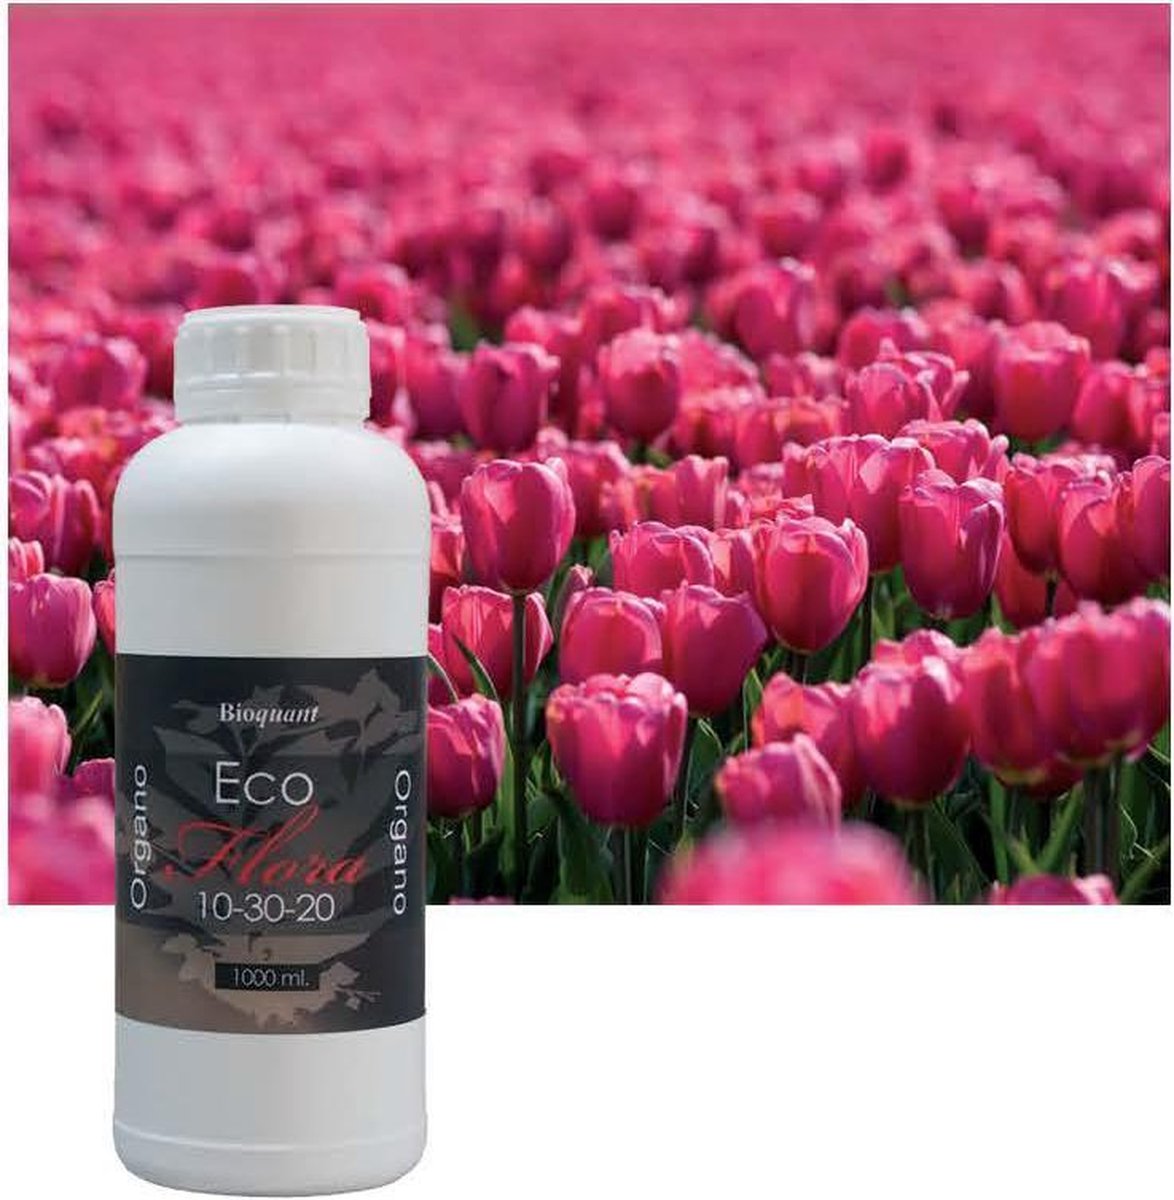 Bioquant Eco Flora 5 liter